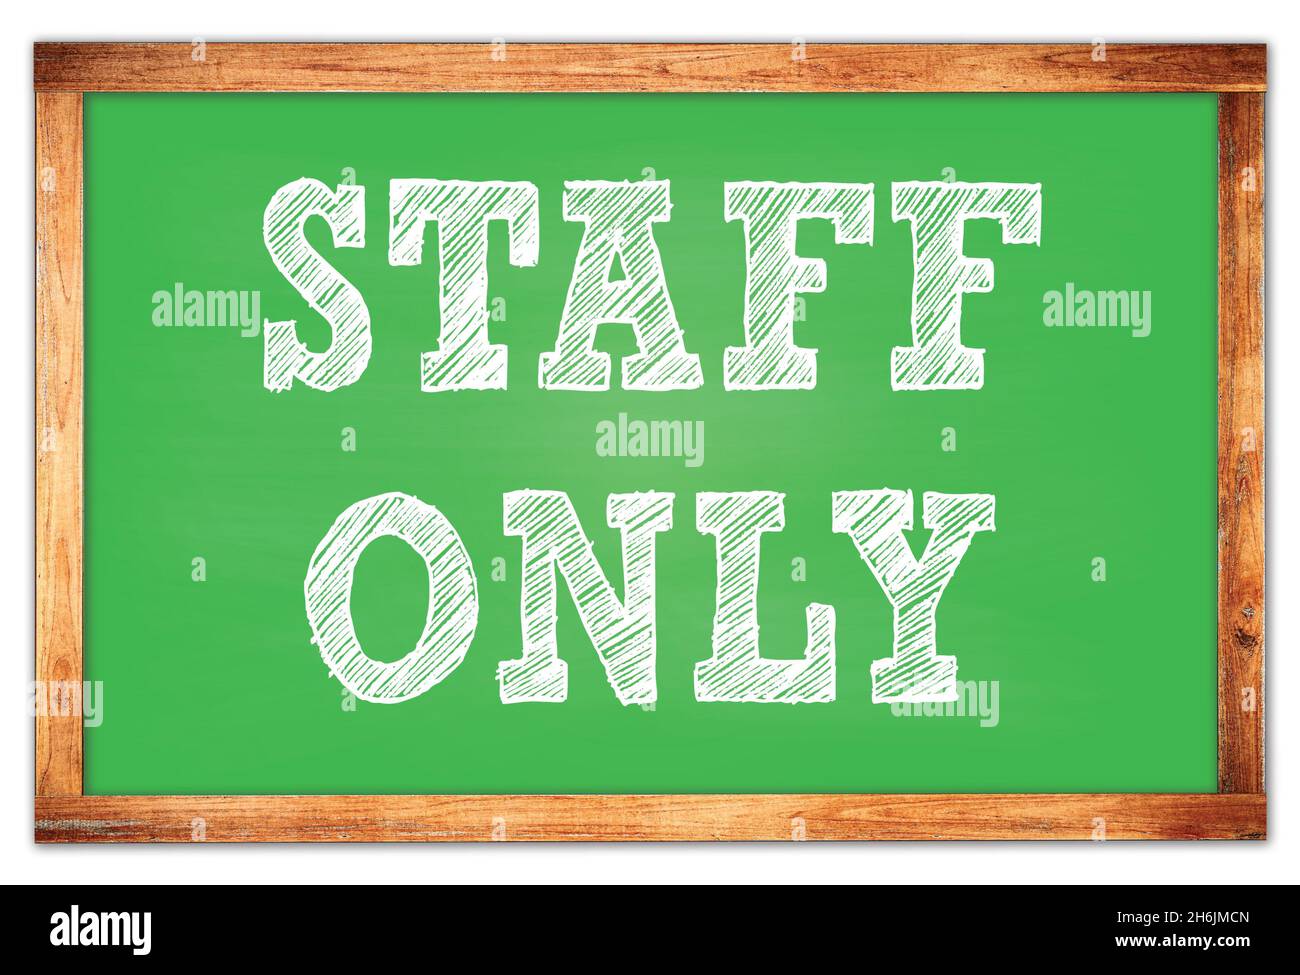 STAFF ONLY written on green wooden frame school blackboard Stock Photo -  Alamy